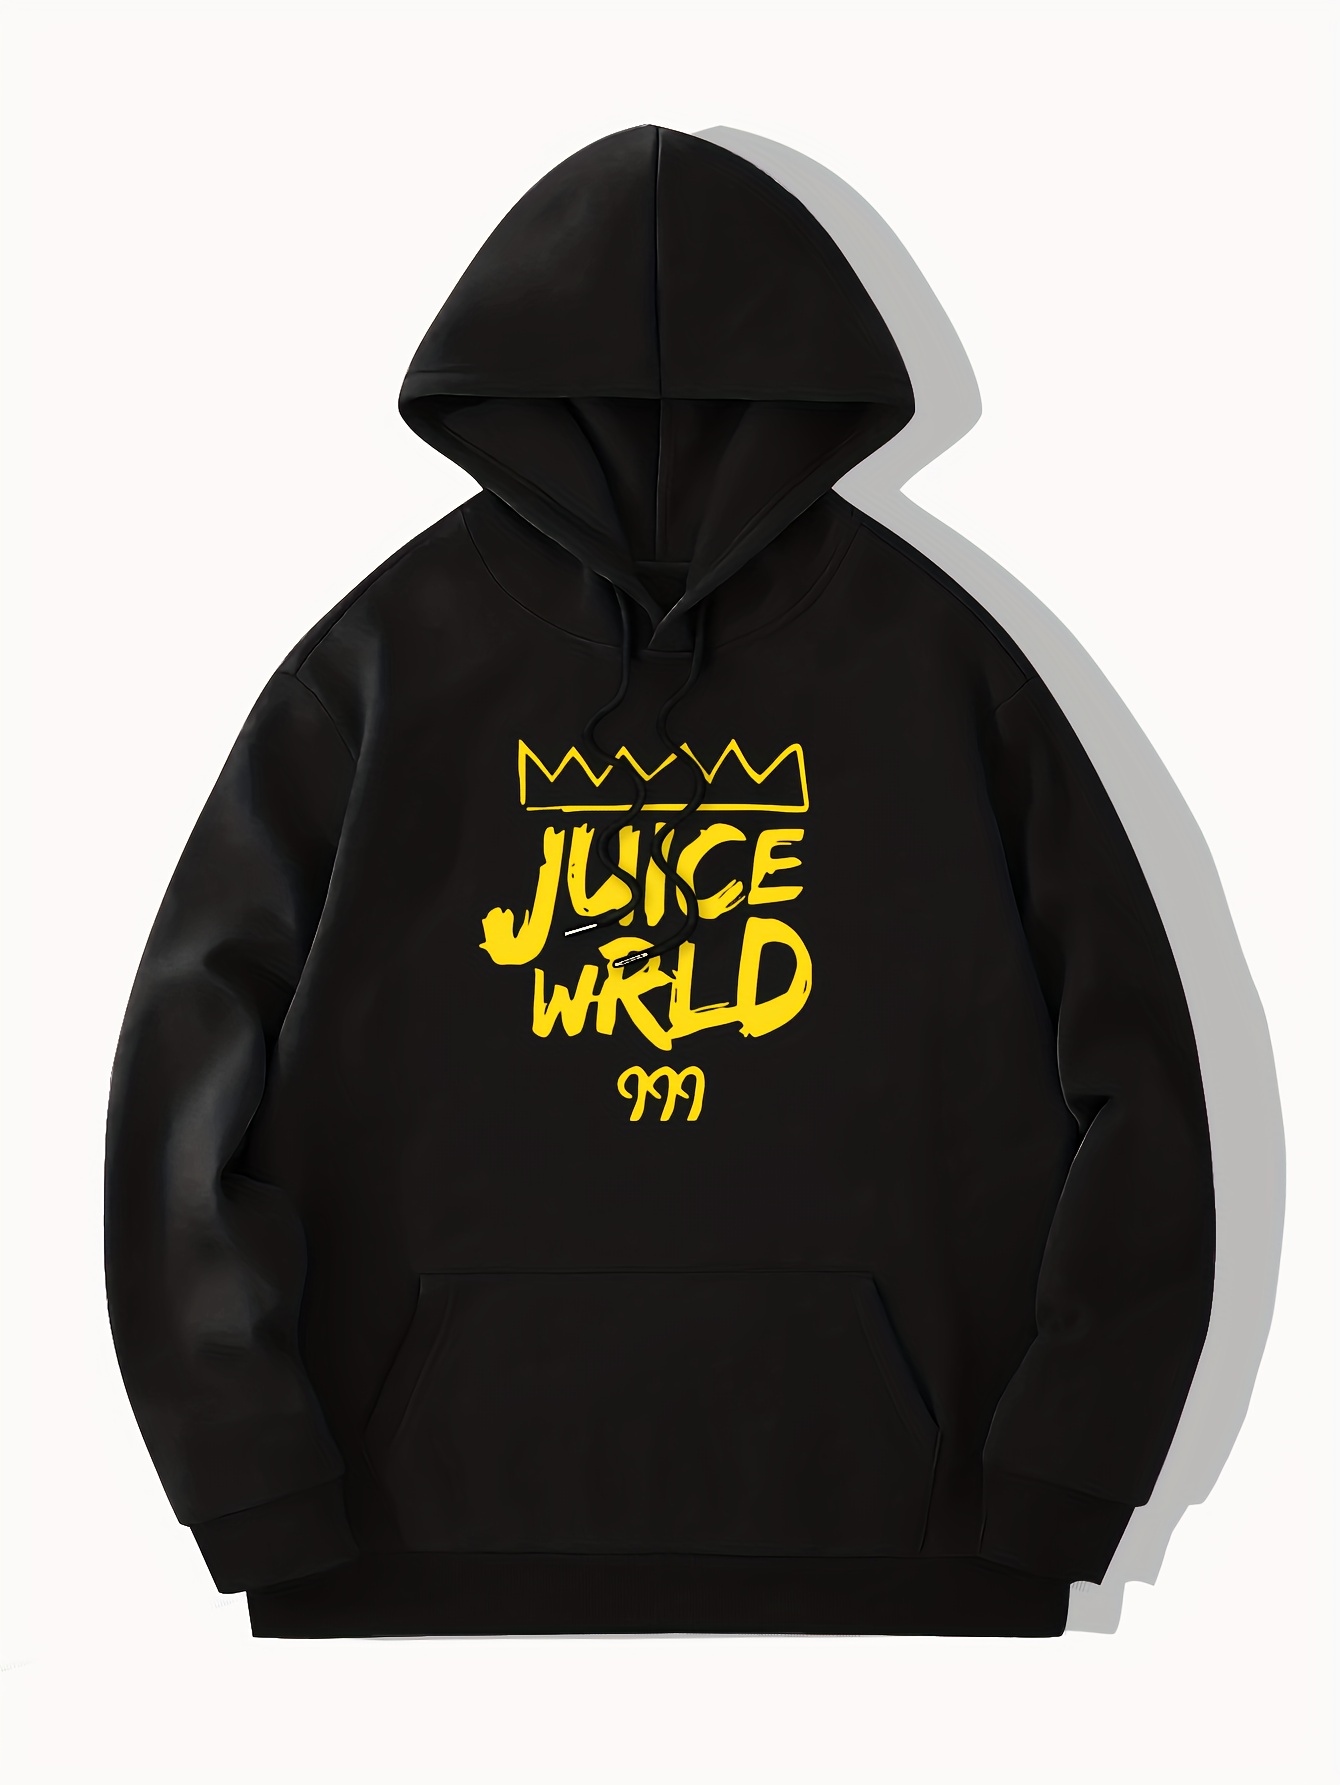 New Juice WRLD Hoodies Women Men Autumn Winter Long Sleeve Sweatshirt  Pullovers Streetwear Y2k Hip Hop Rapper Juice WRLD Hoodie - AliExpress